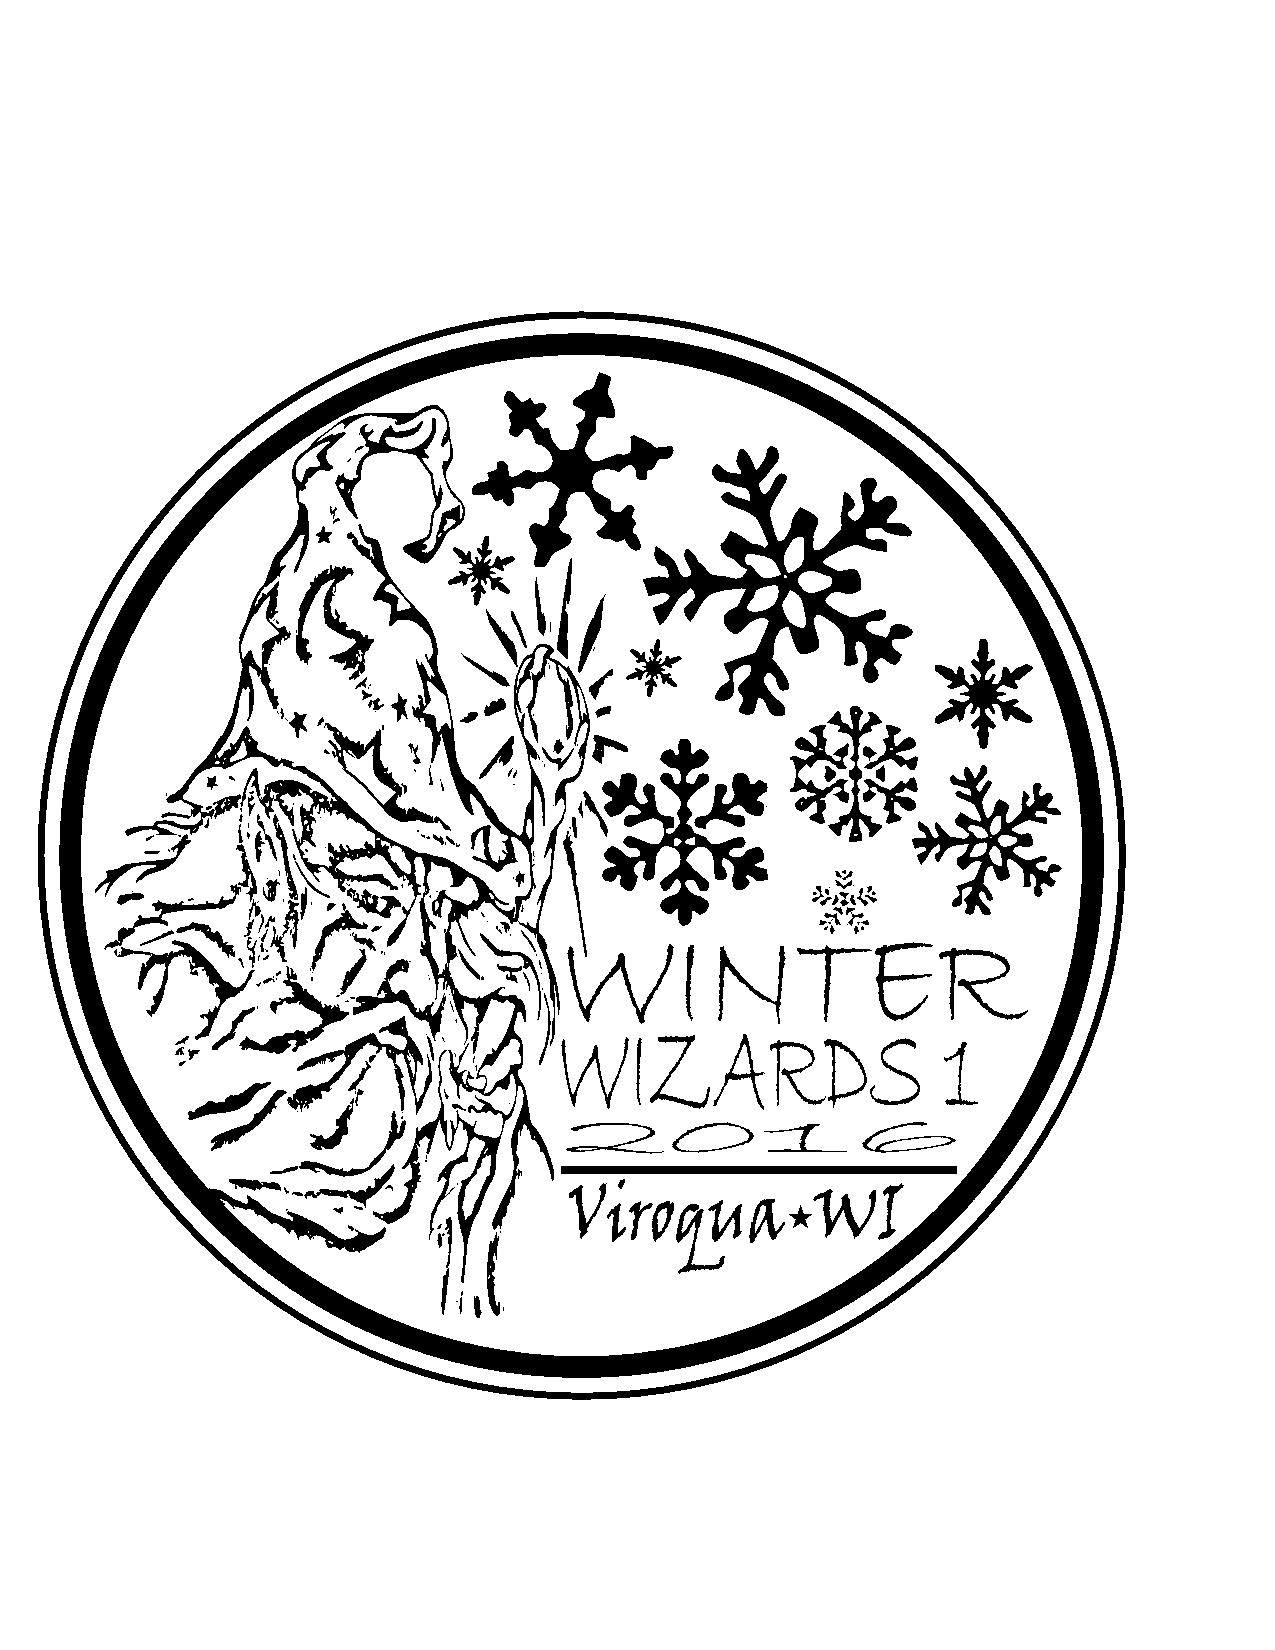 Winter Wizards 1